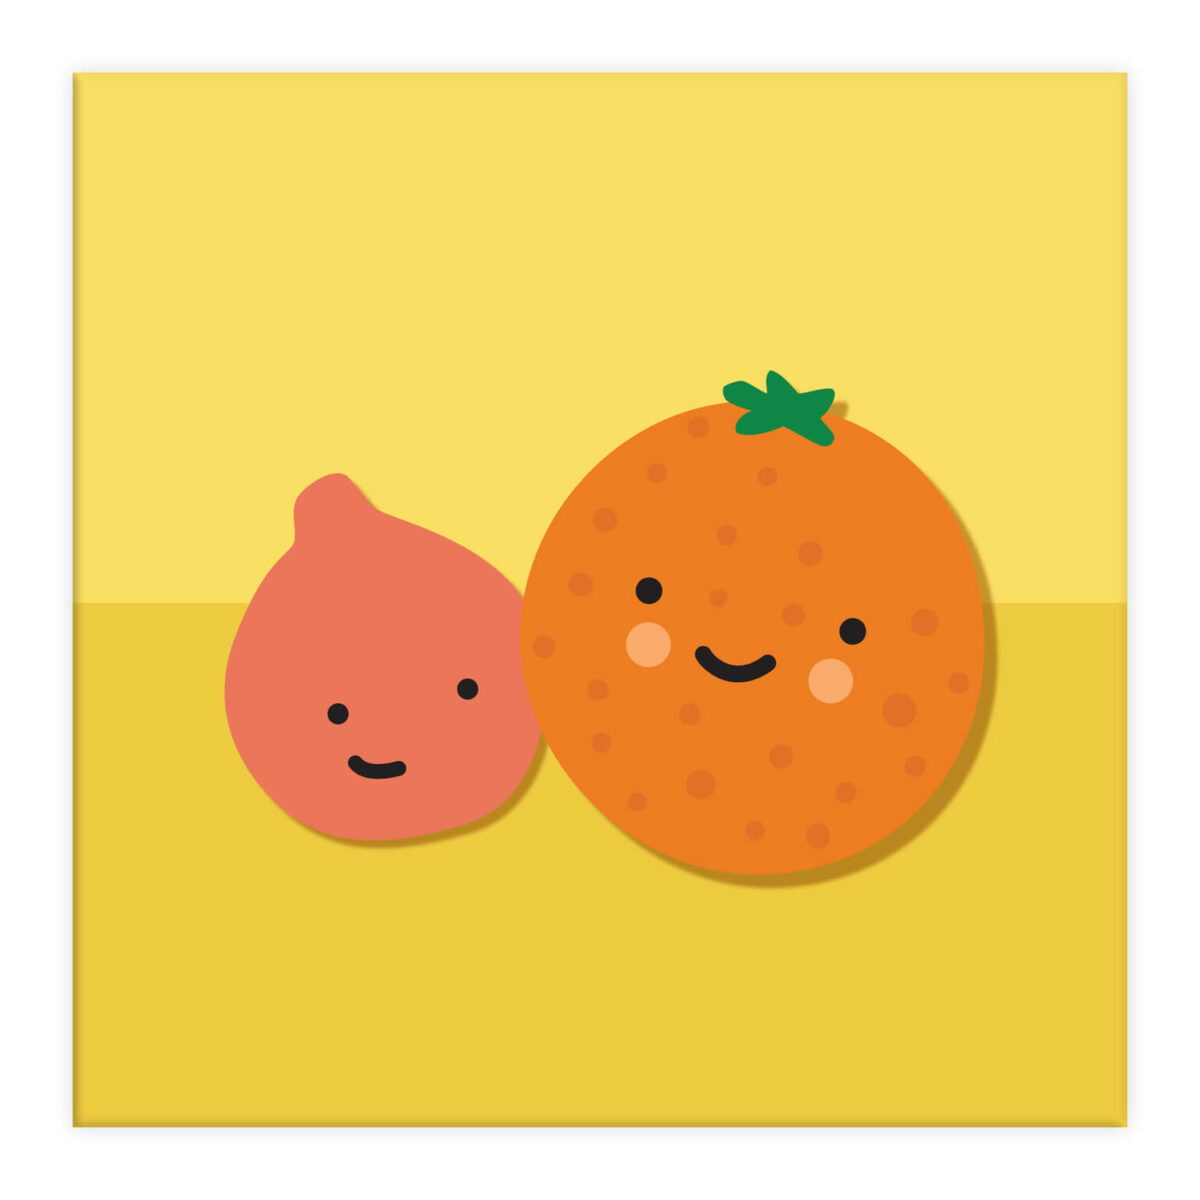 sinaasappel minneola blij bijtje